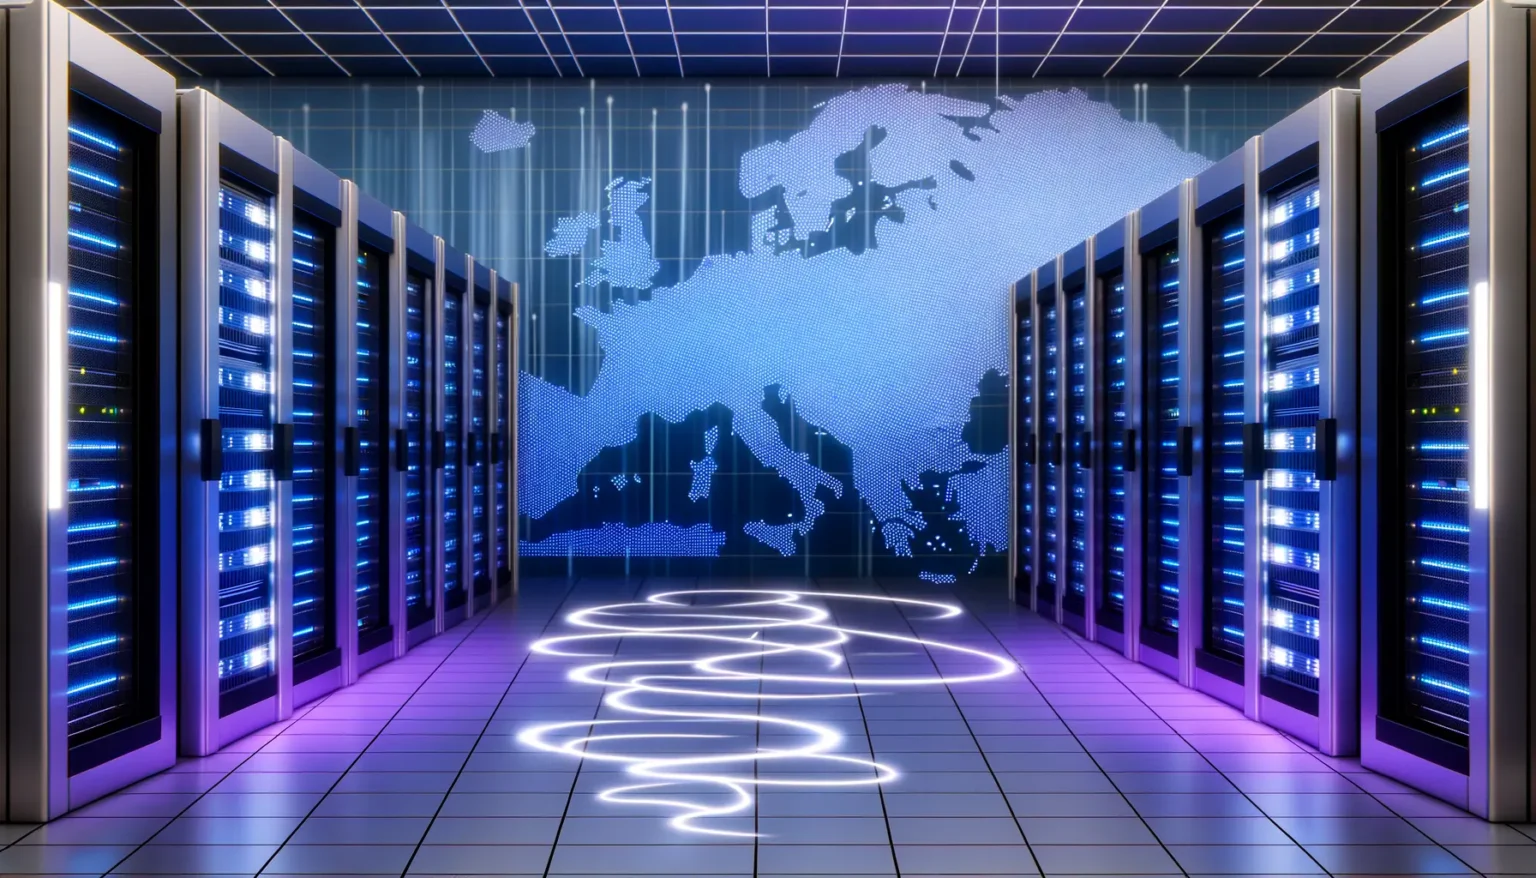 Ein modernes Datenzentrum mit hohen Serverracks, die blaue Lichter ausstrahlen. Im Hintergrund ist eine digitale Weltkarte in blauen Punkten an der Wand, und der Boden zeigt Spuren von weißen Lichtern, die sich wie ein Pfad durch den Raum schlängeln.